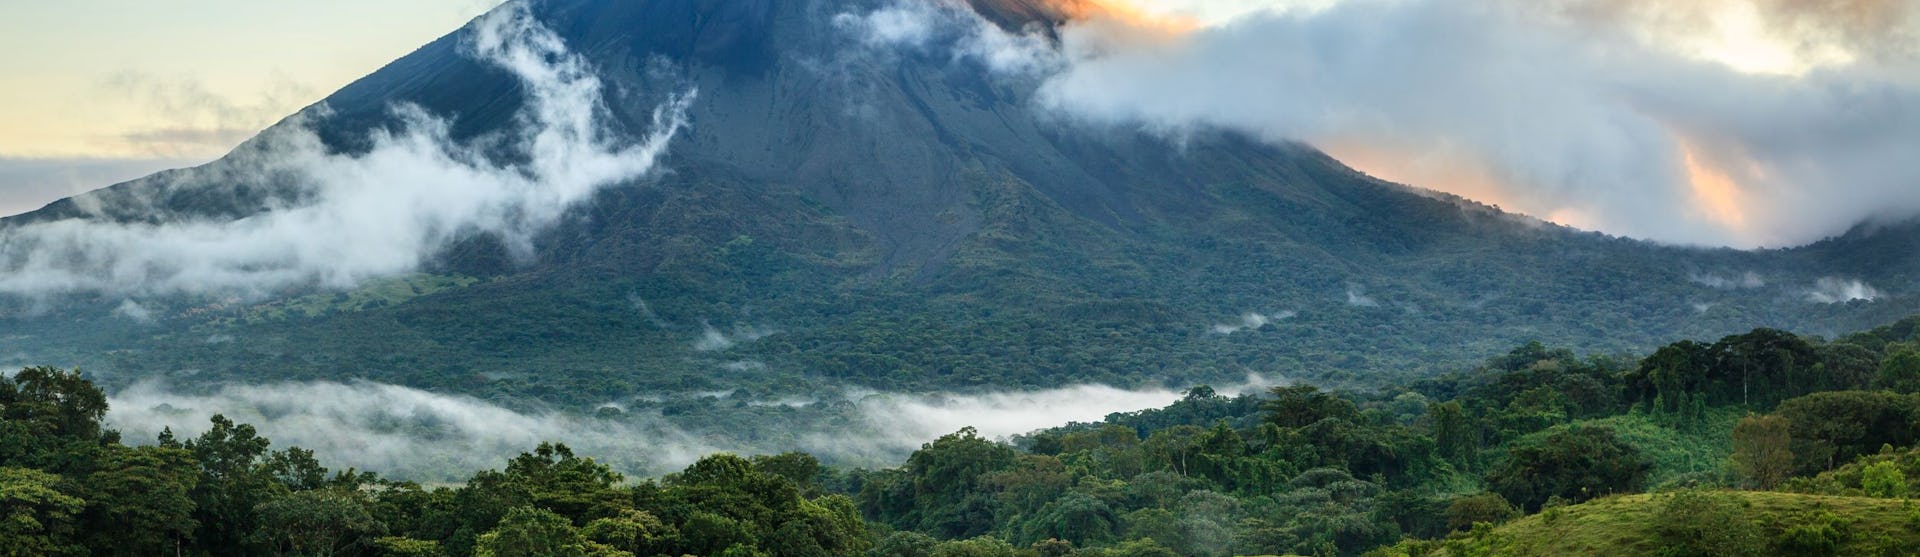 Costa Rica-Central-America